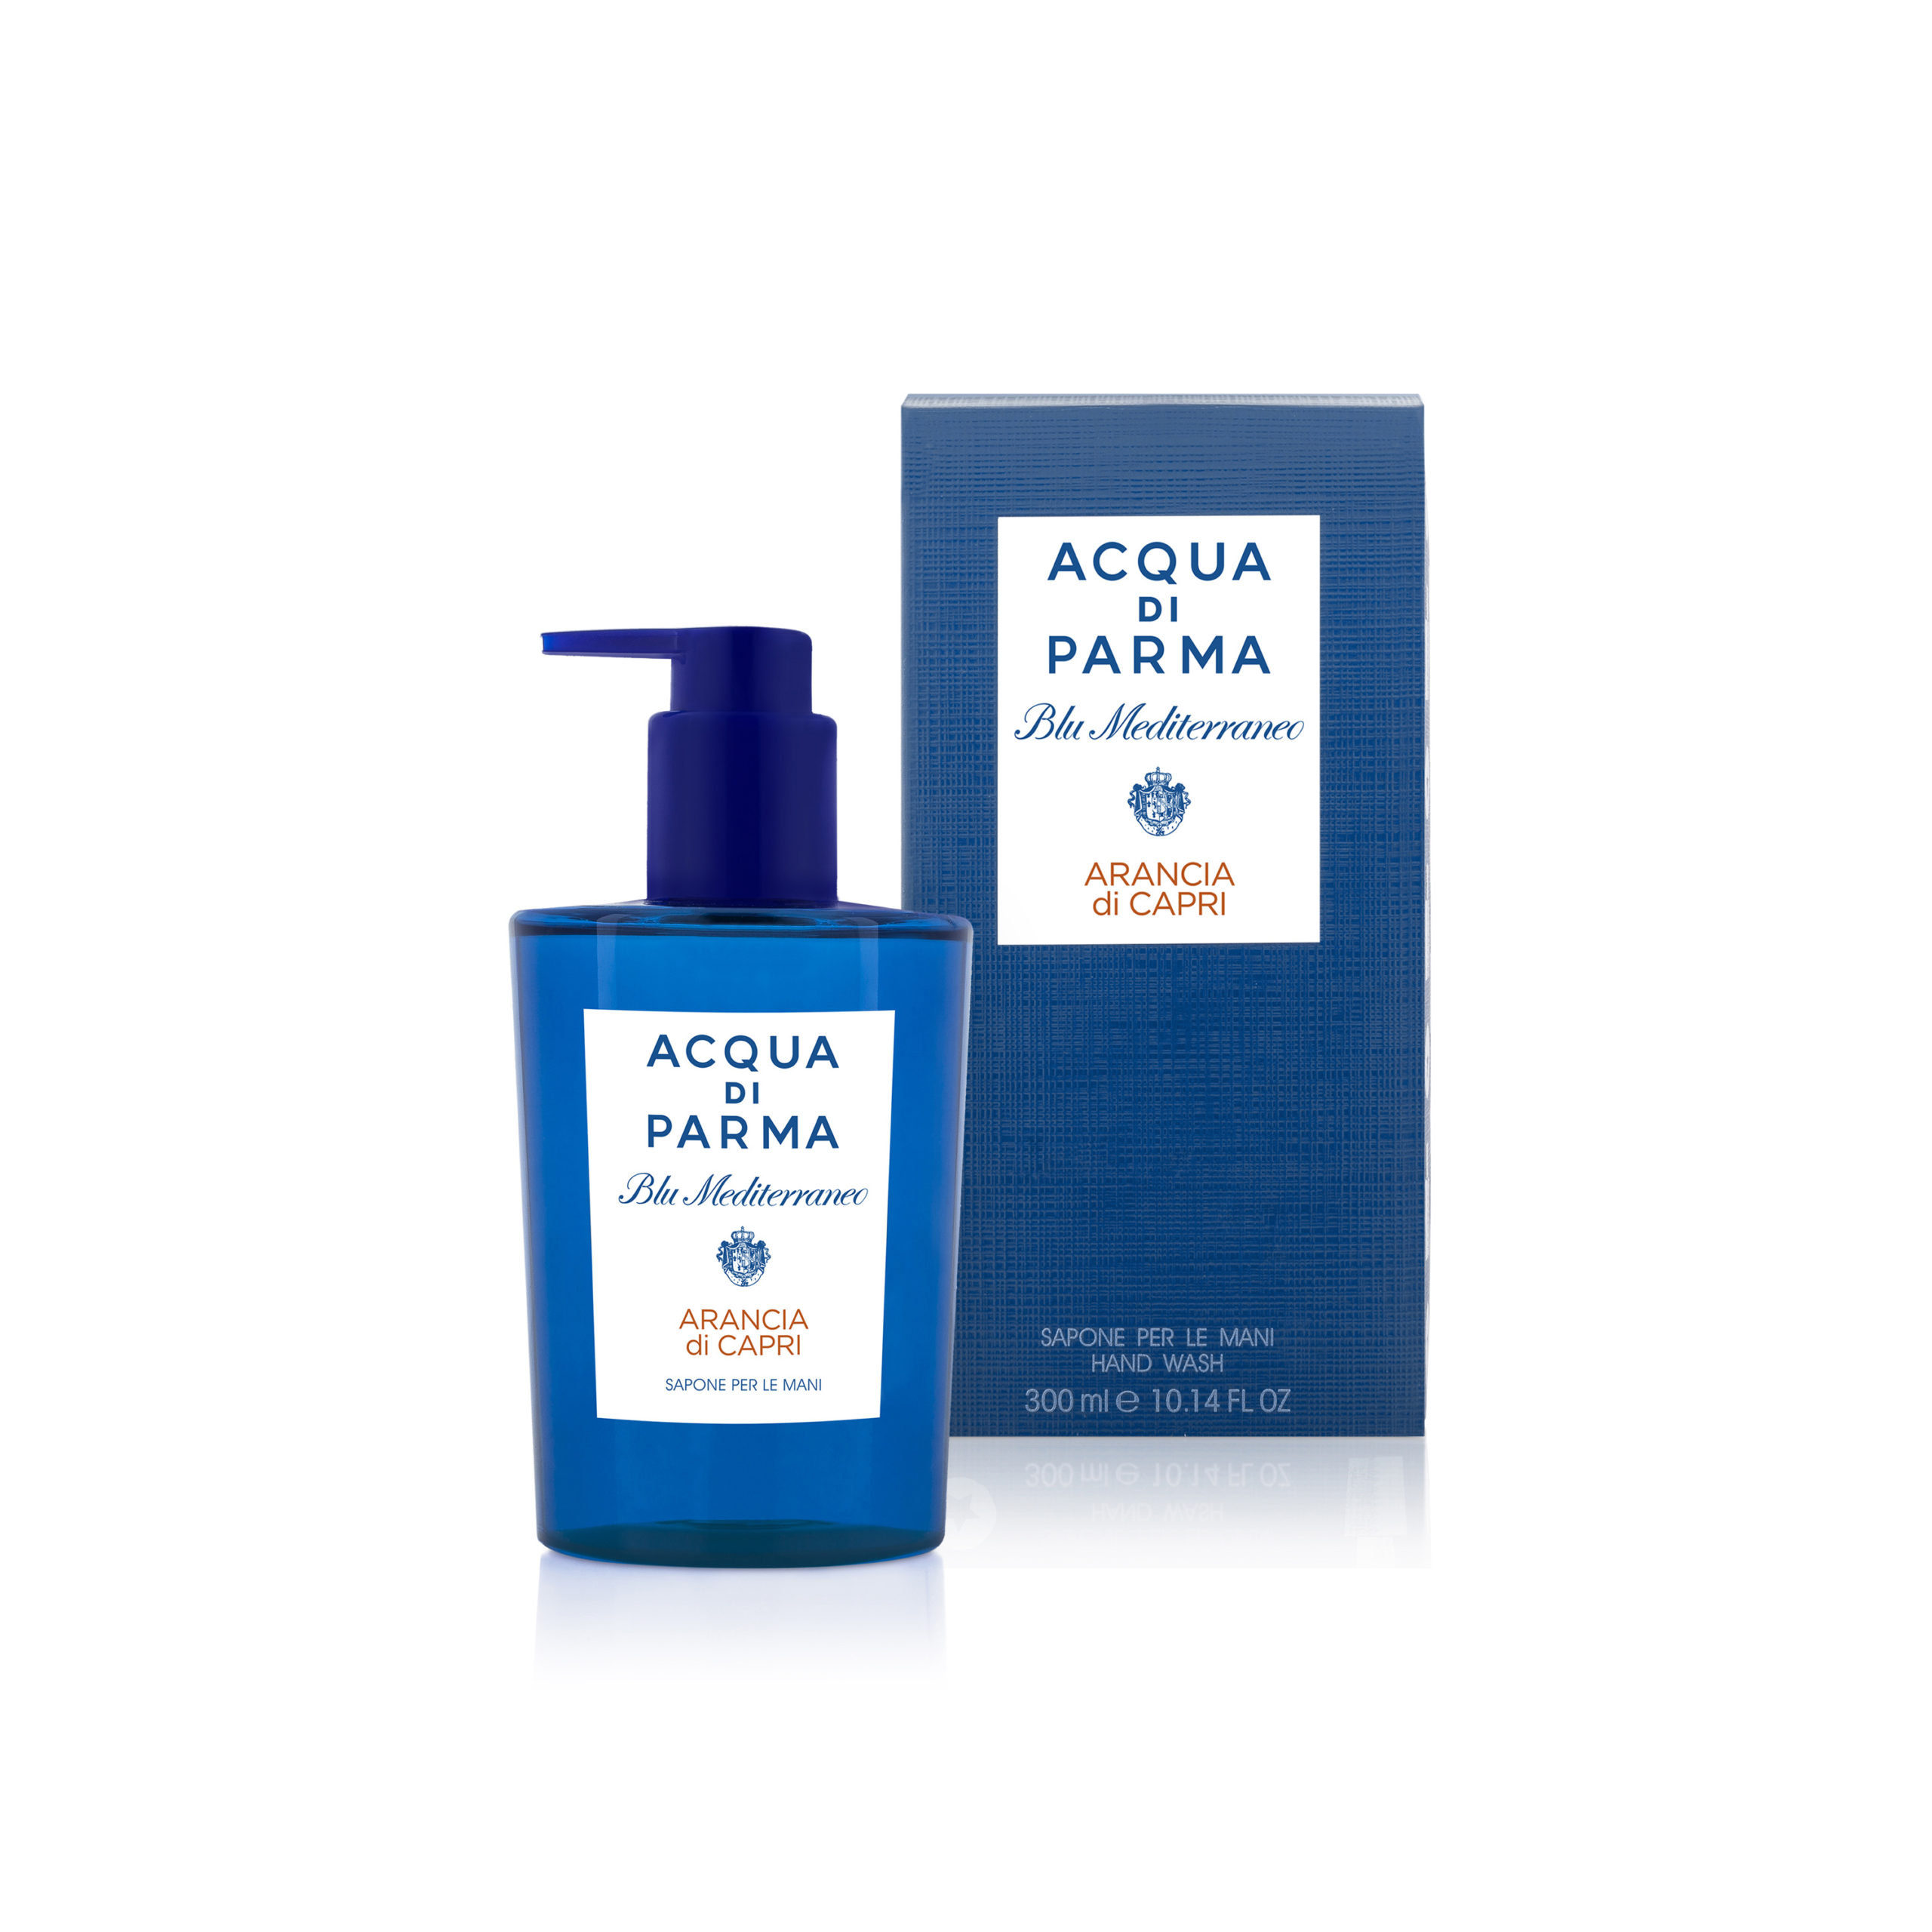 アランチャ ハンドウォッシュ - アクアディパルマ公式 ACQUA DI PARMA フレグランス 香水 デュフューザー